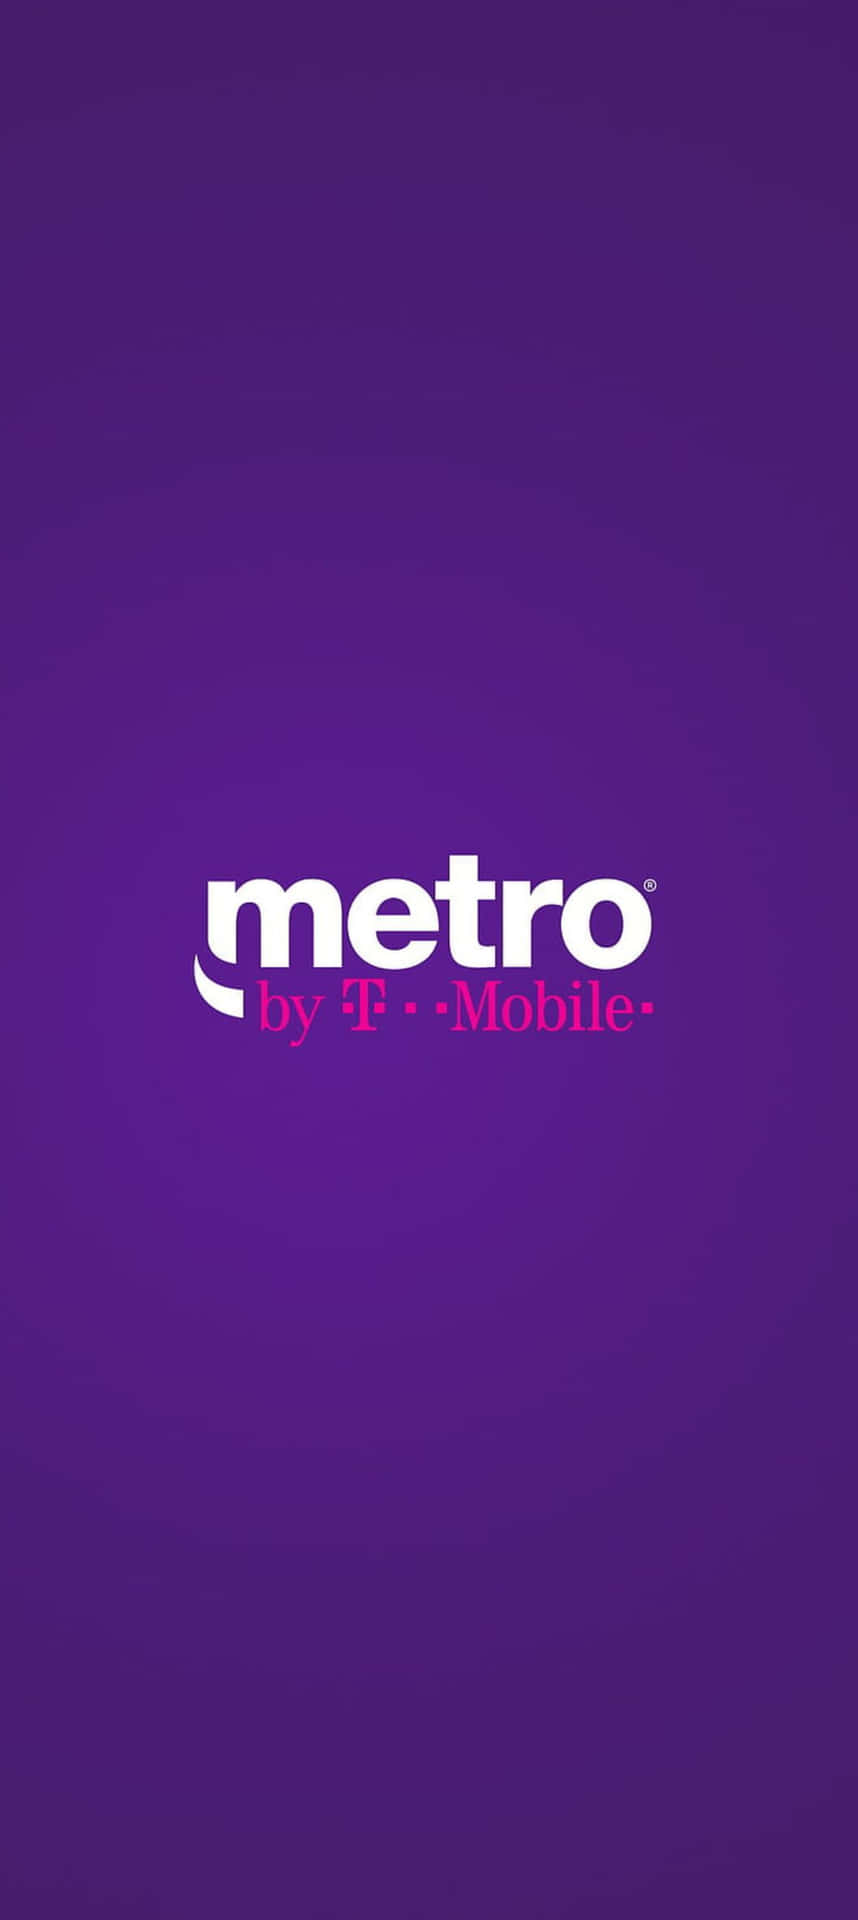 Metroby T Mobile Branding Wallpaper